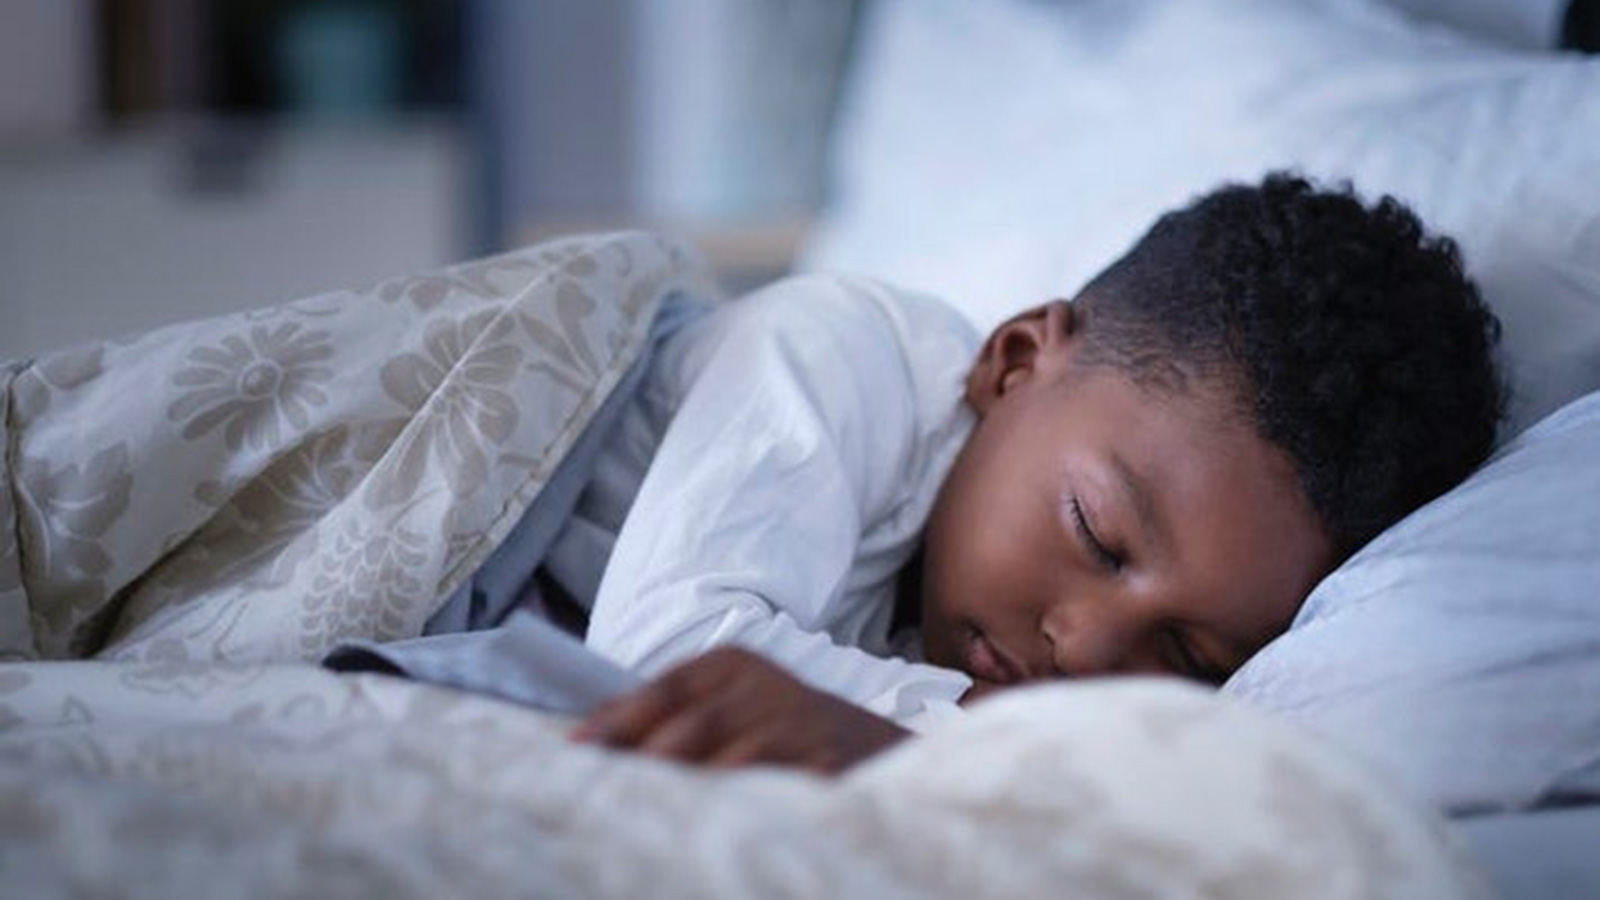 النوم هو أحد أهم العوامل في الحفاظ على إيقاع يومي صحي (غيتي)